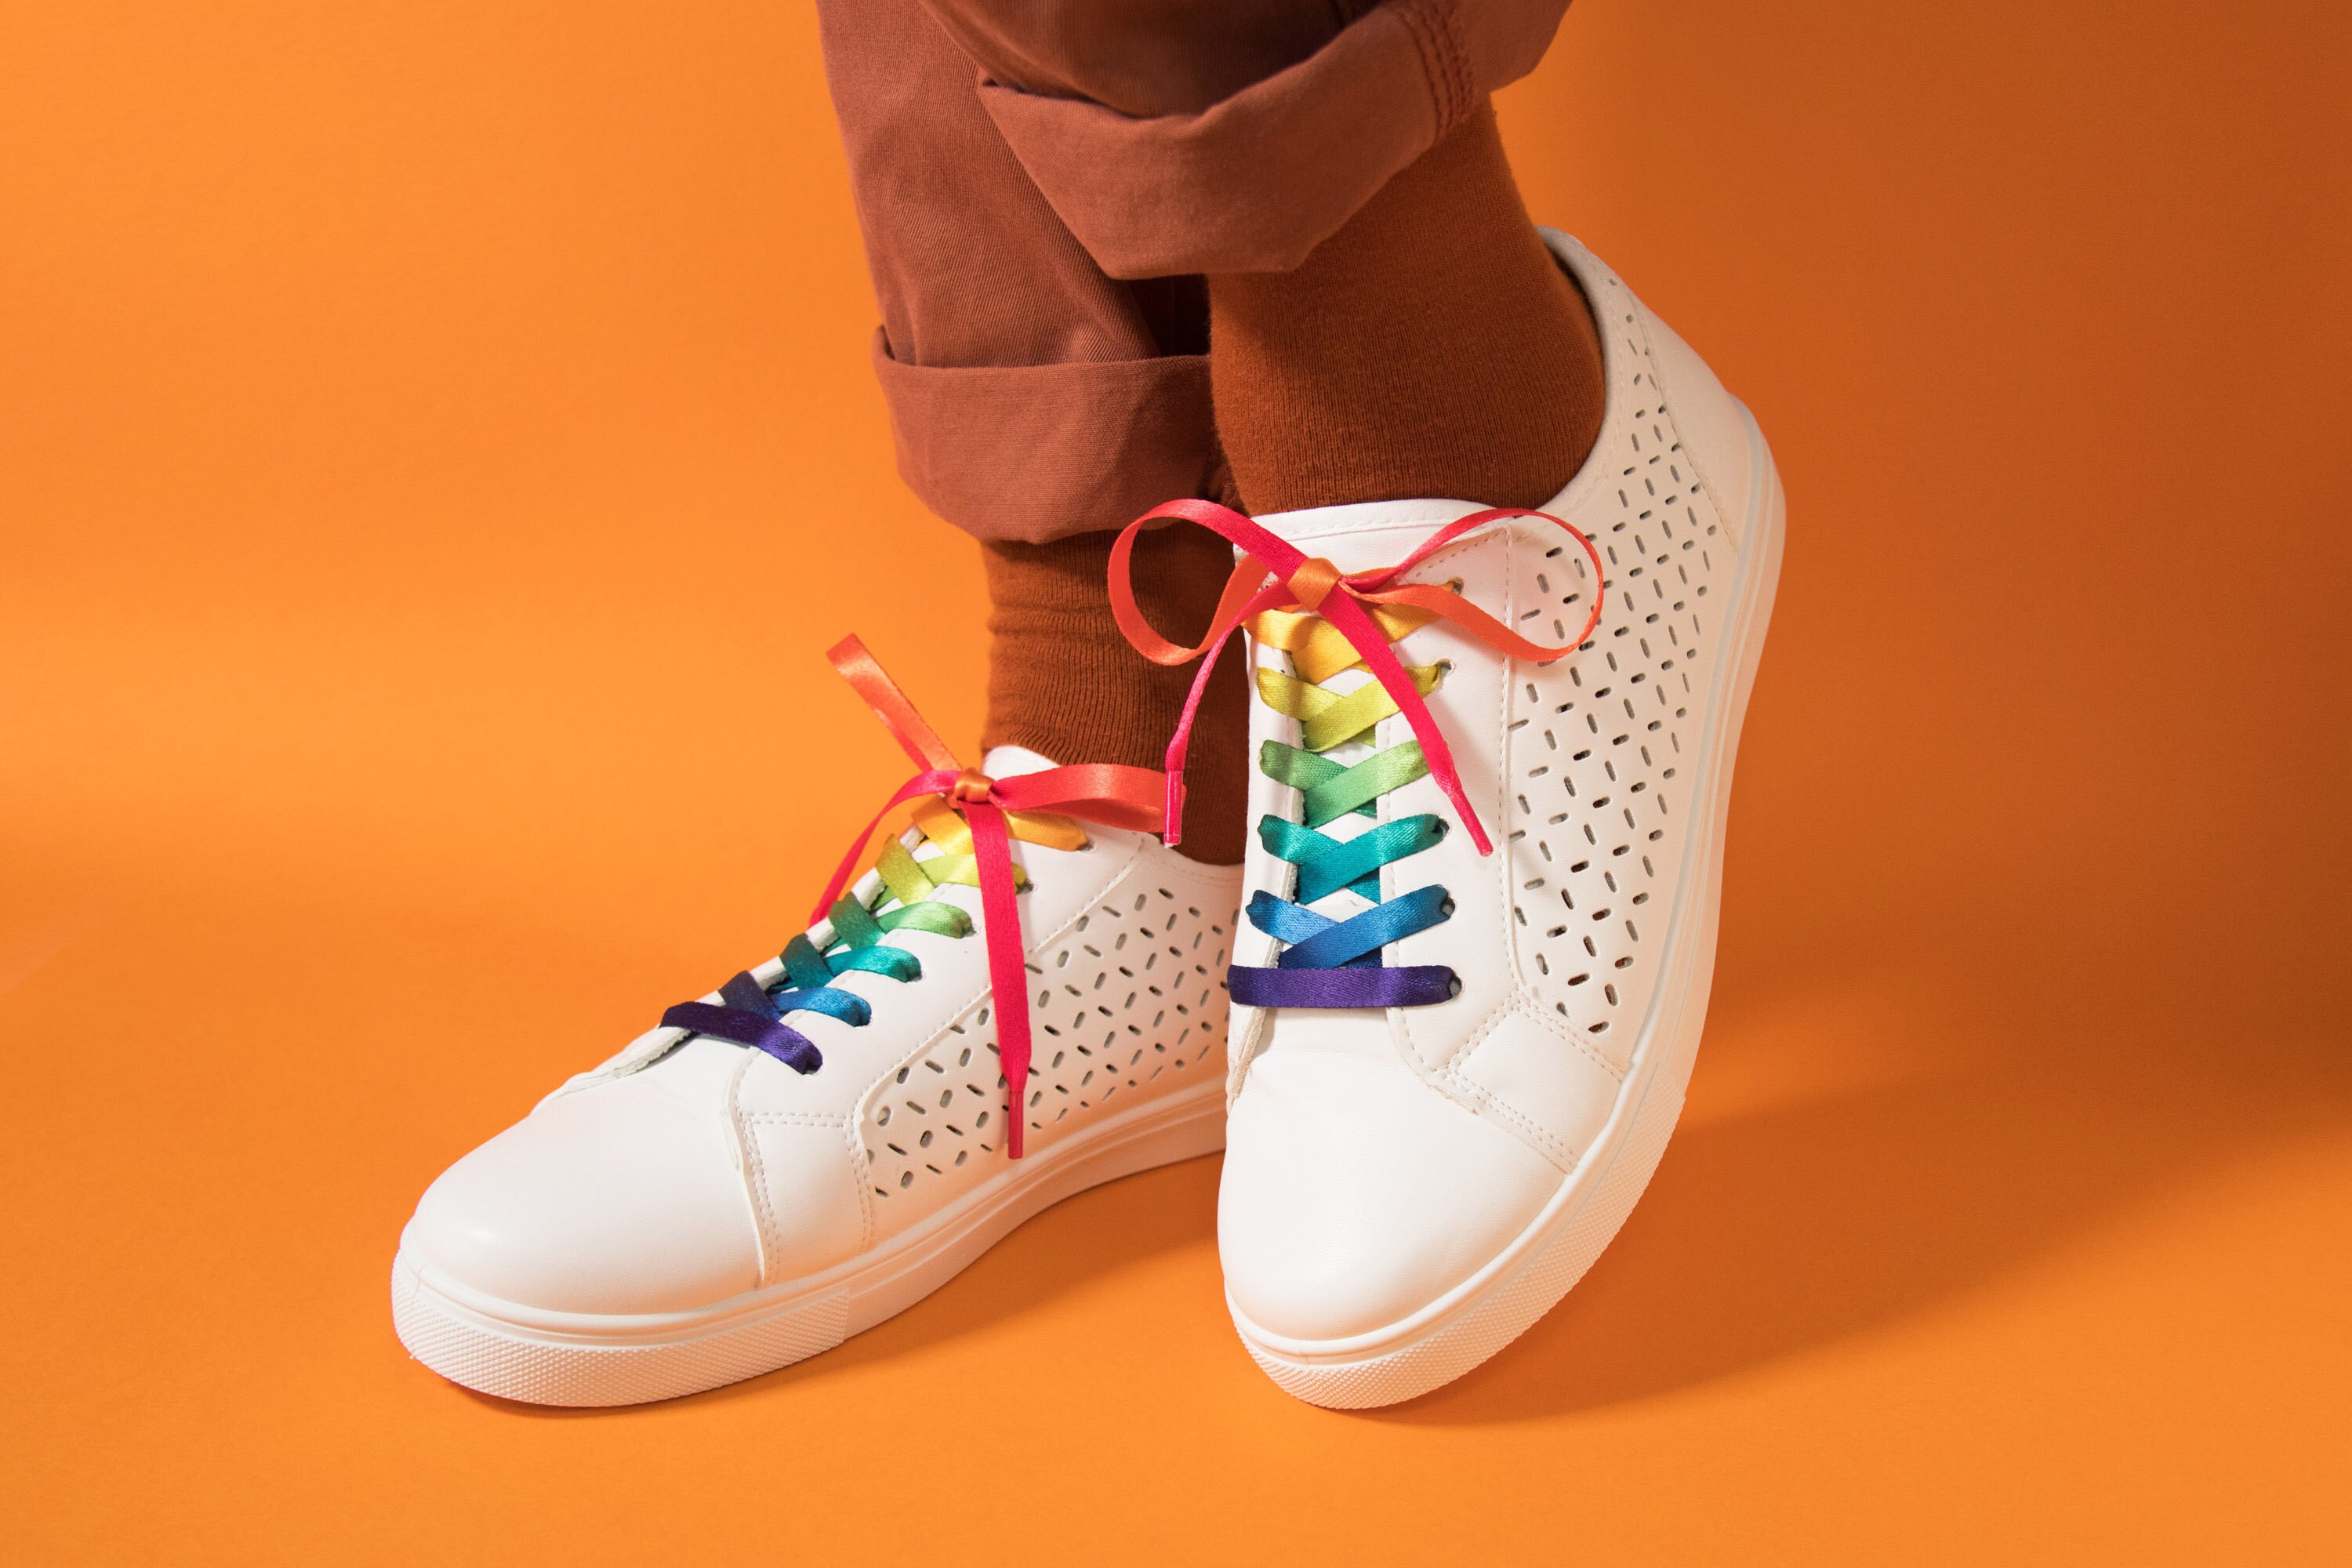 pride shoelaces